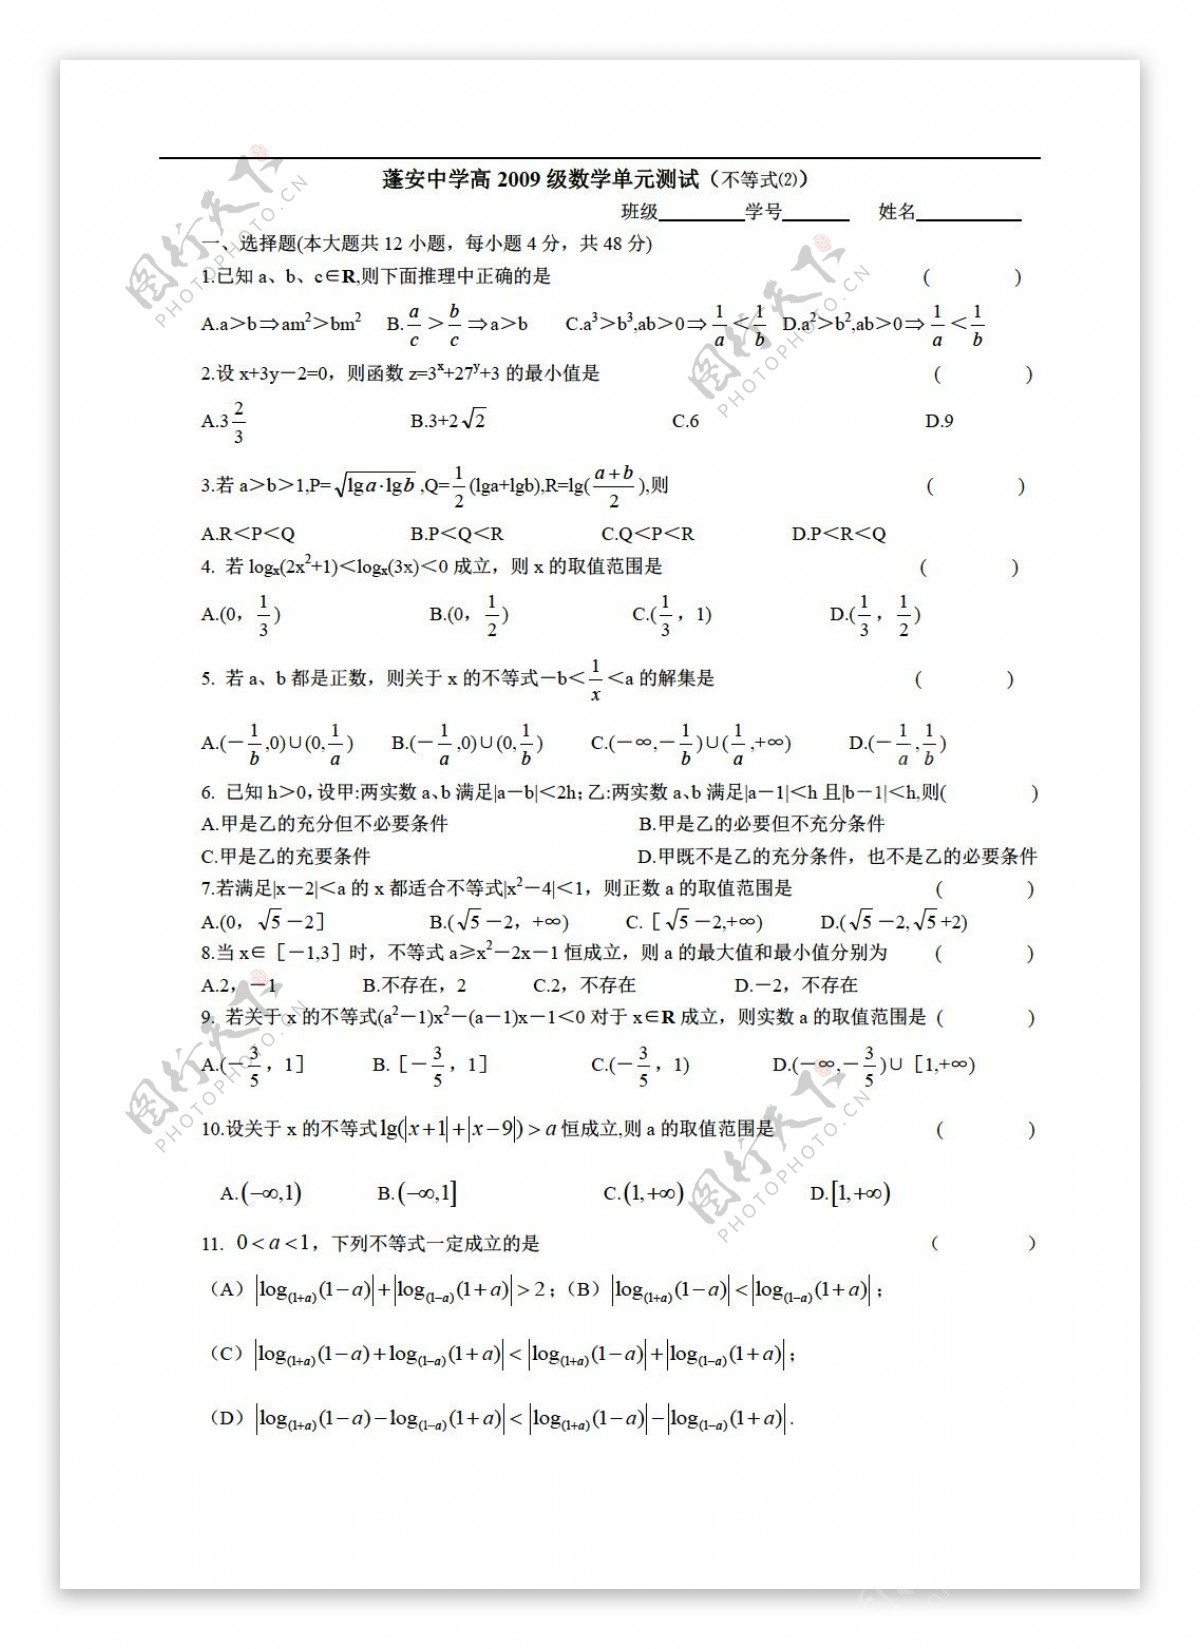 数学人教版四川省蓬安中学高2009级单元测试不等式